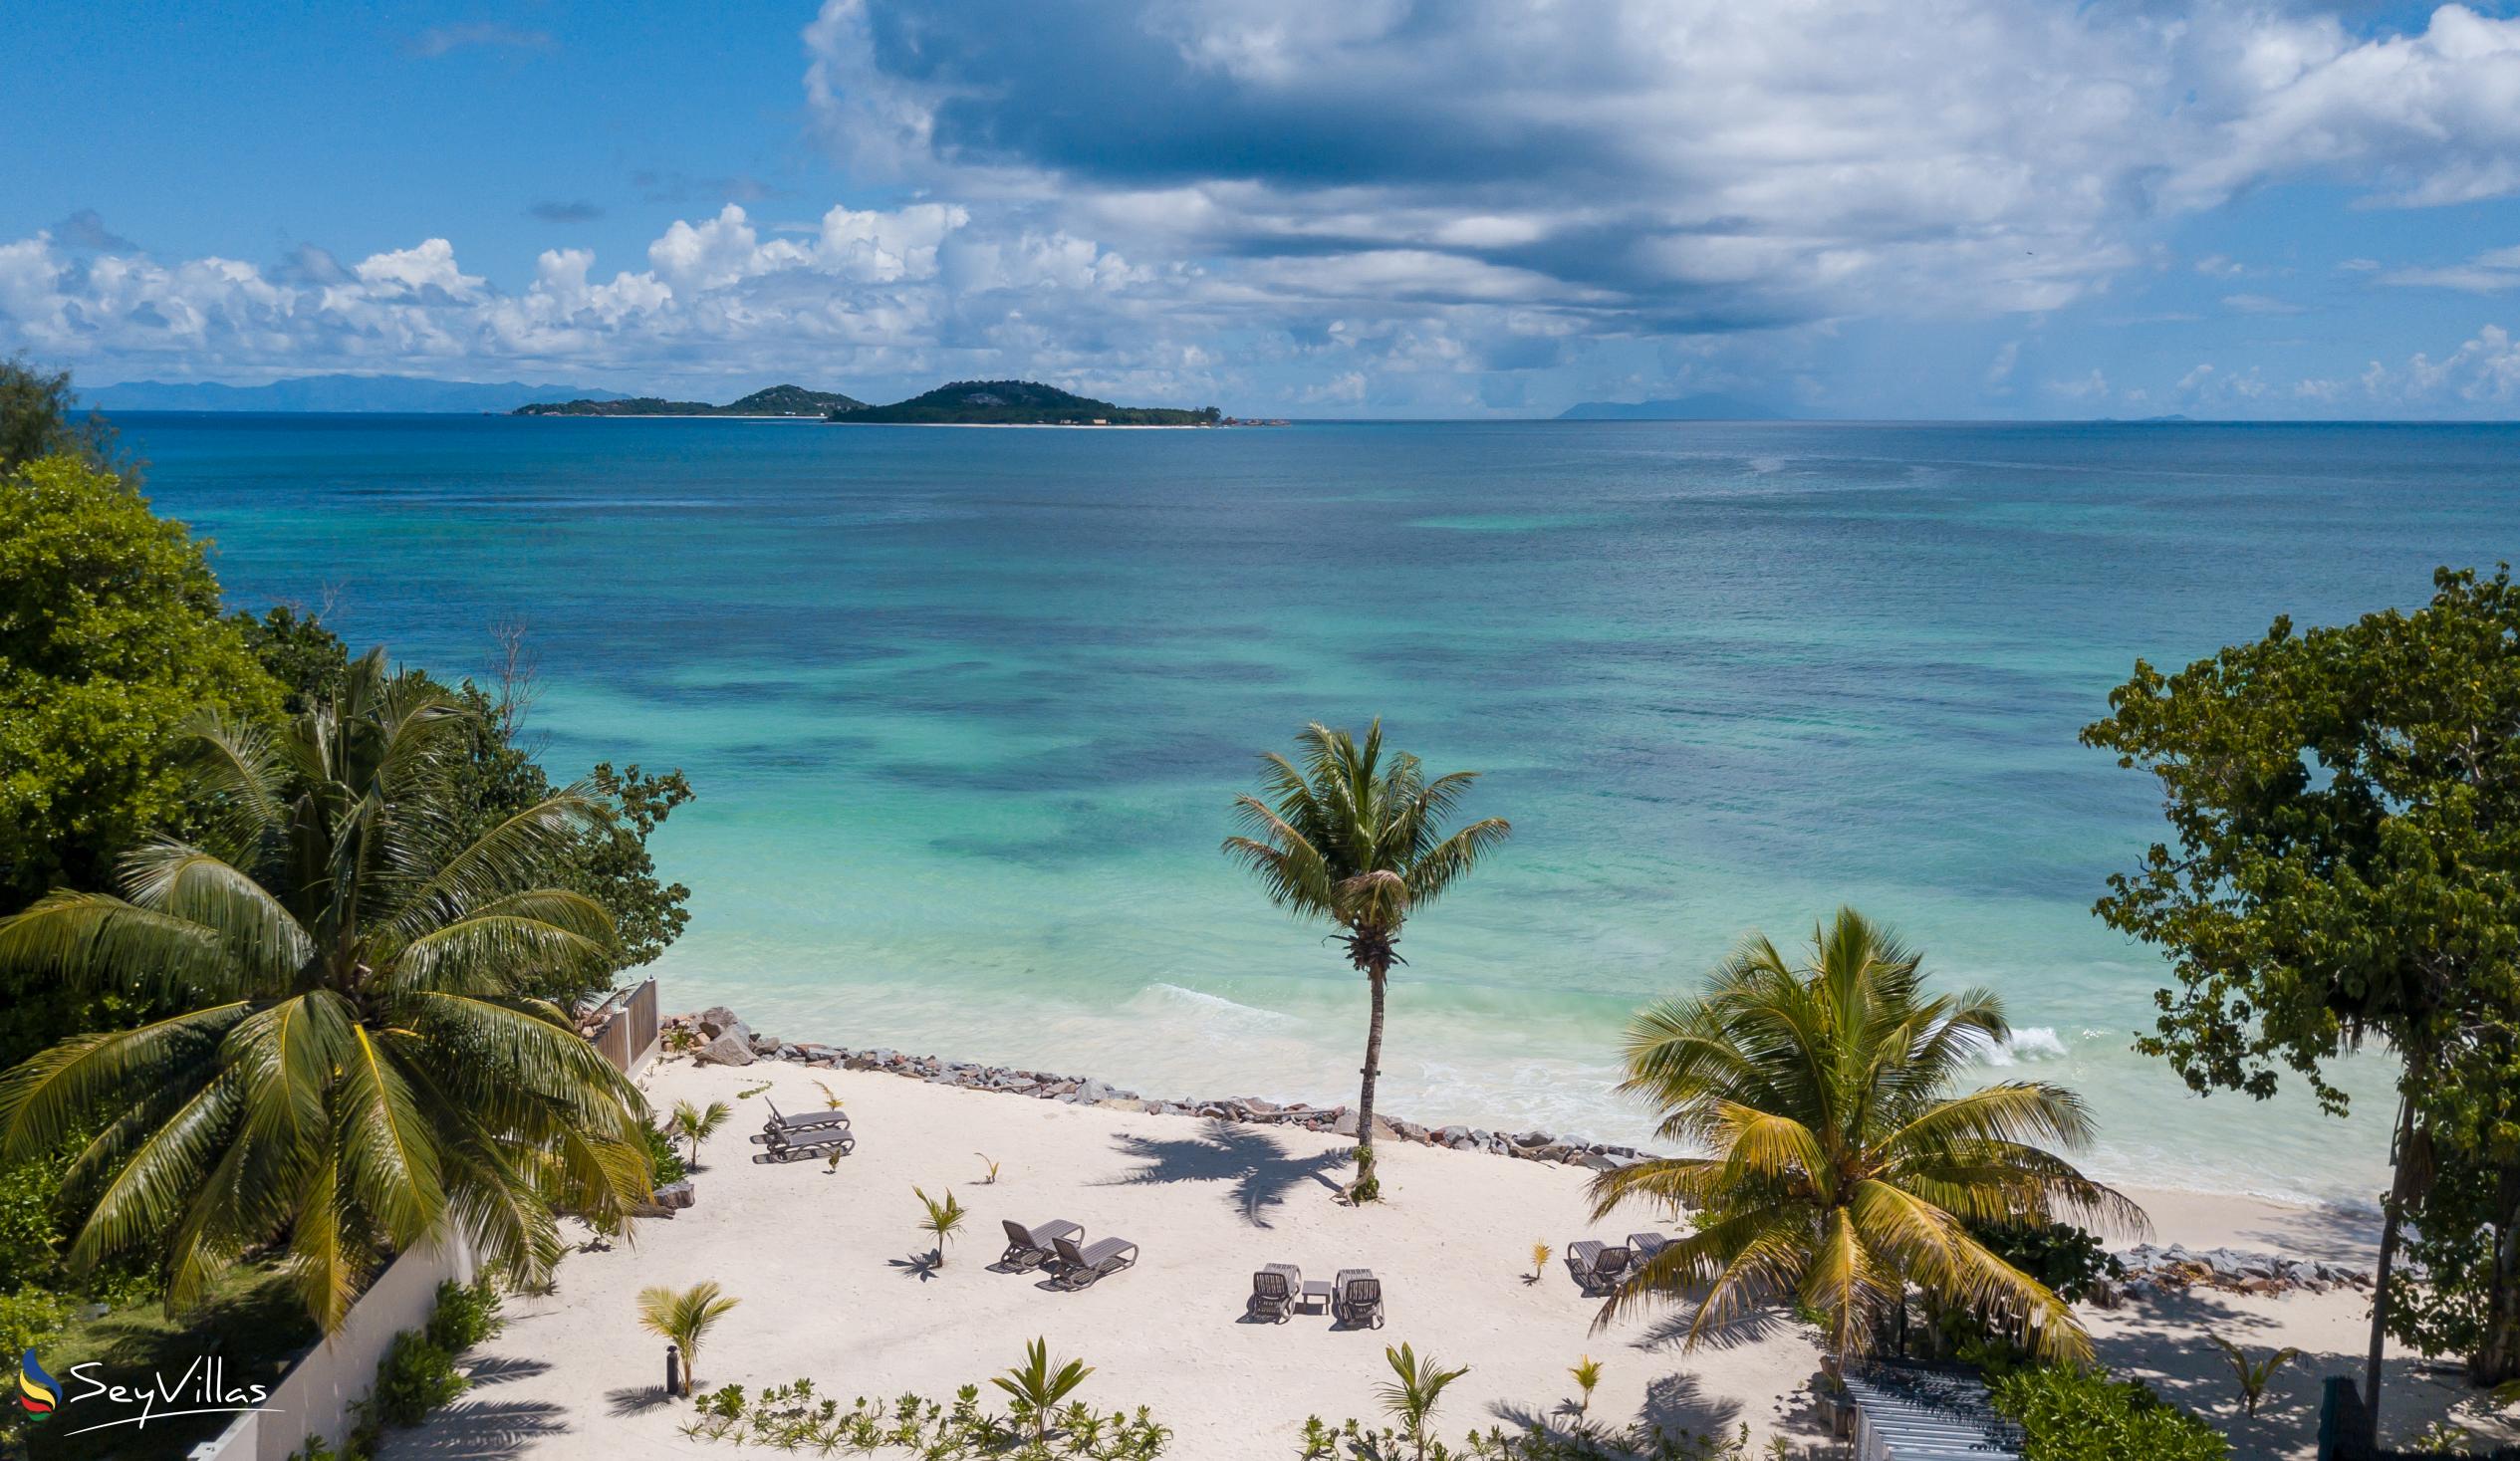 Foto 35: Villas Coco Beach - Posizione - Praslin (Seychelles)